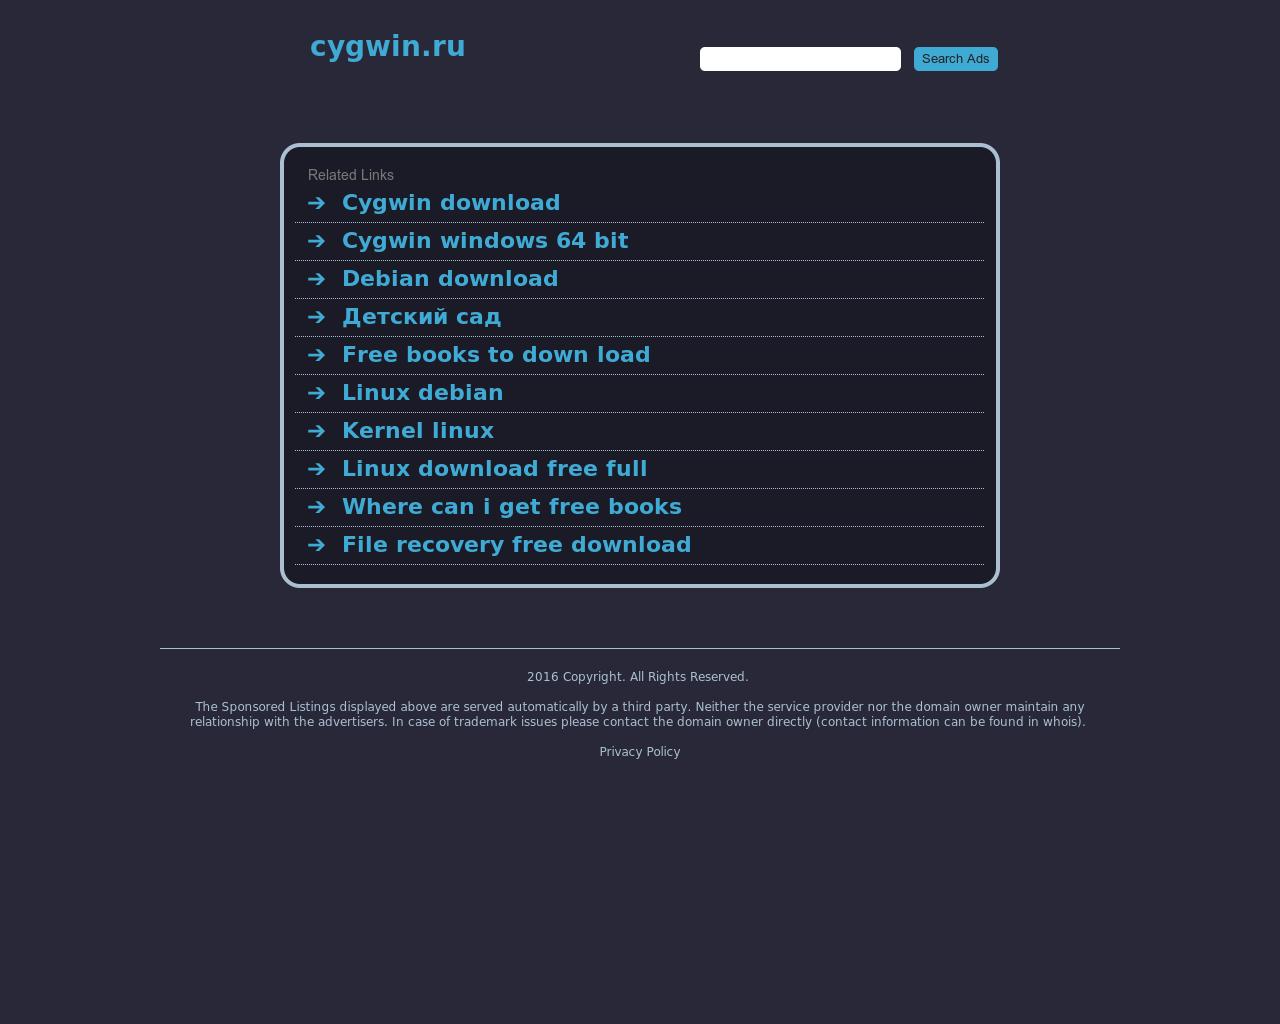 Изображение сайта cygwin.ru в разрешении 1280x1024